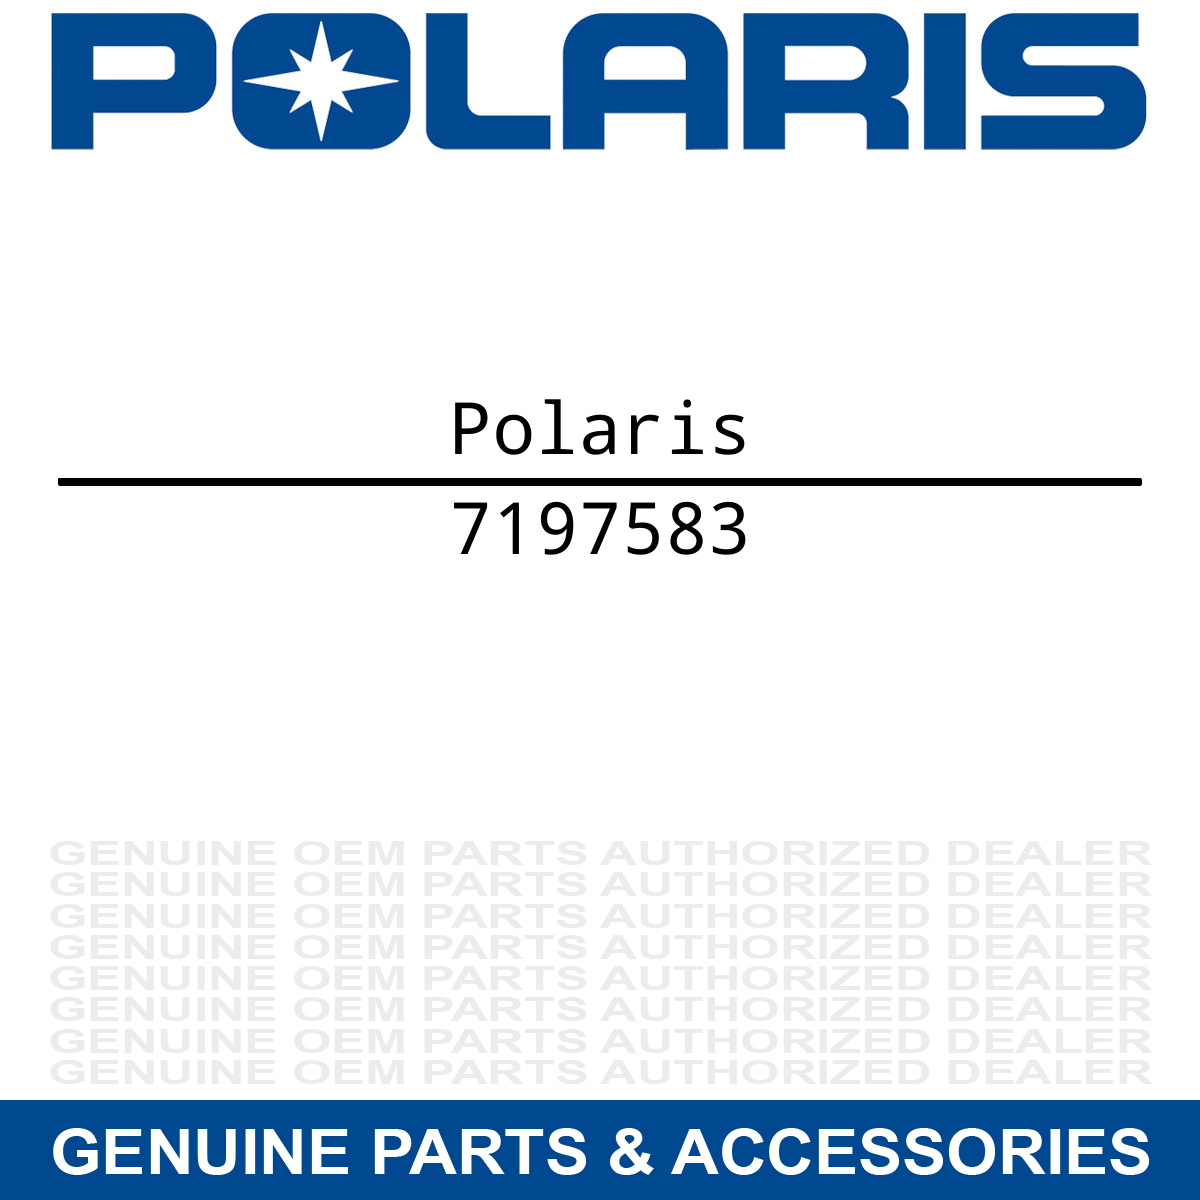 Polaris 7197583